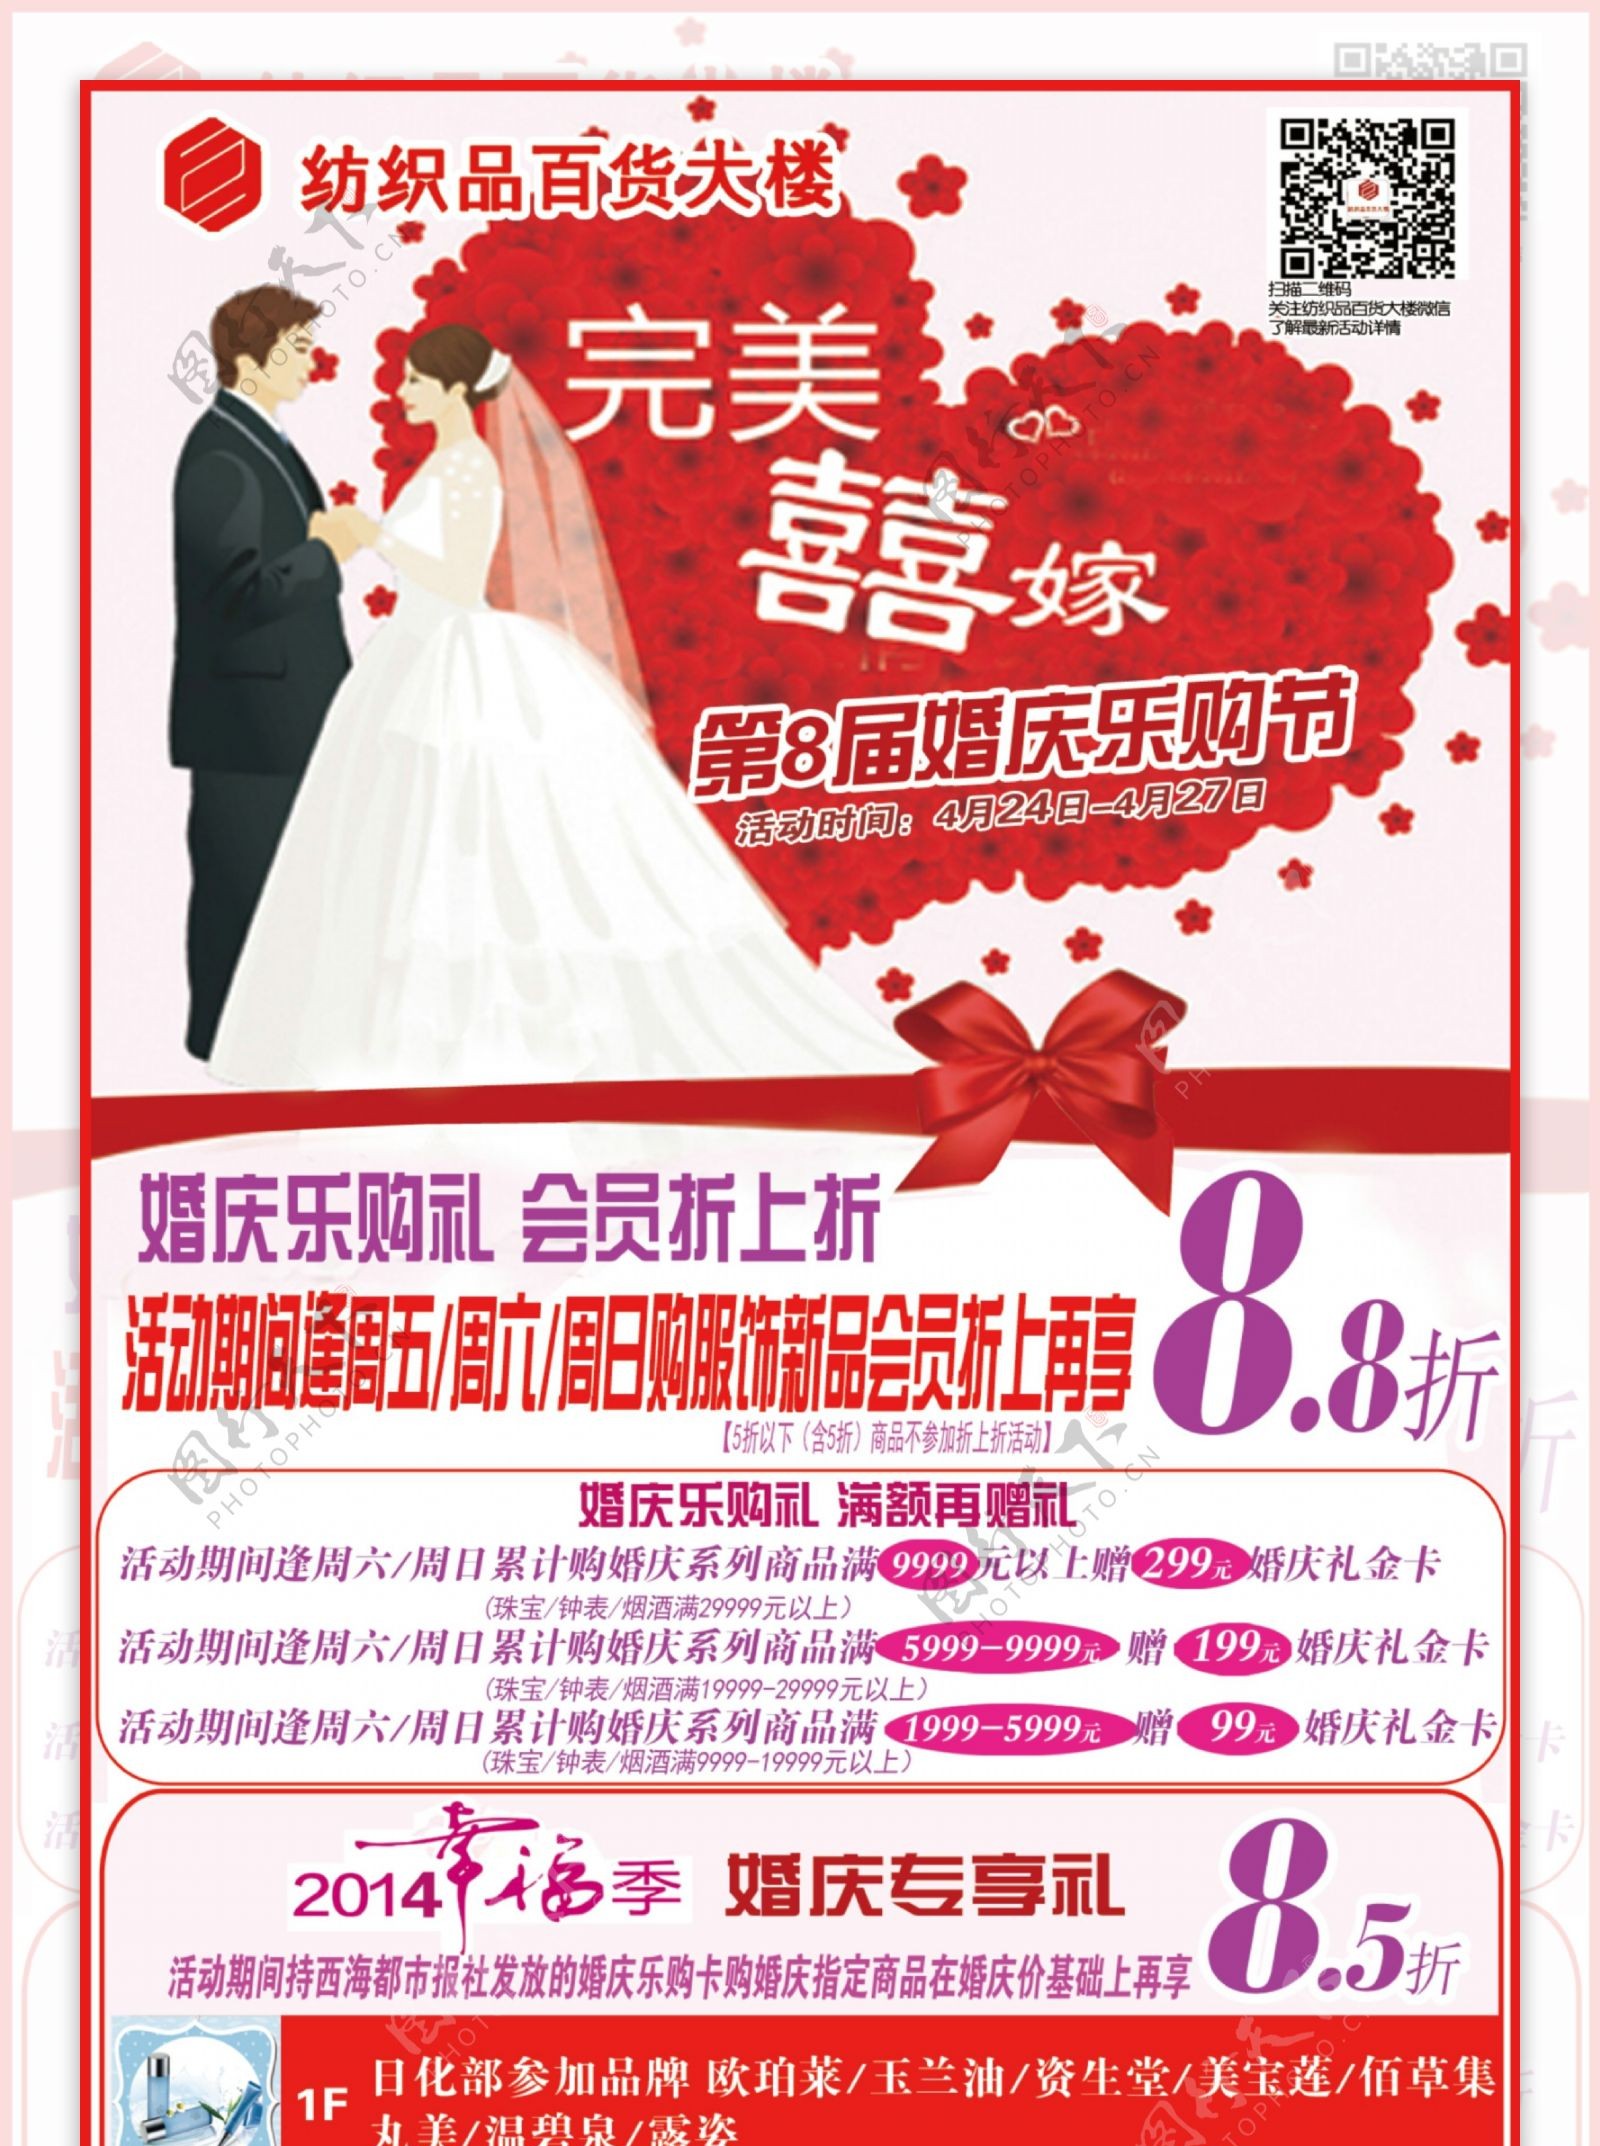 婚庆节报纸广告